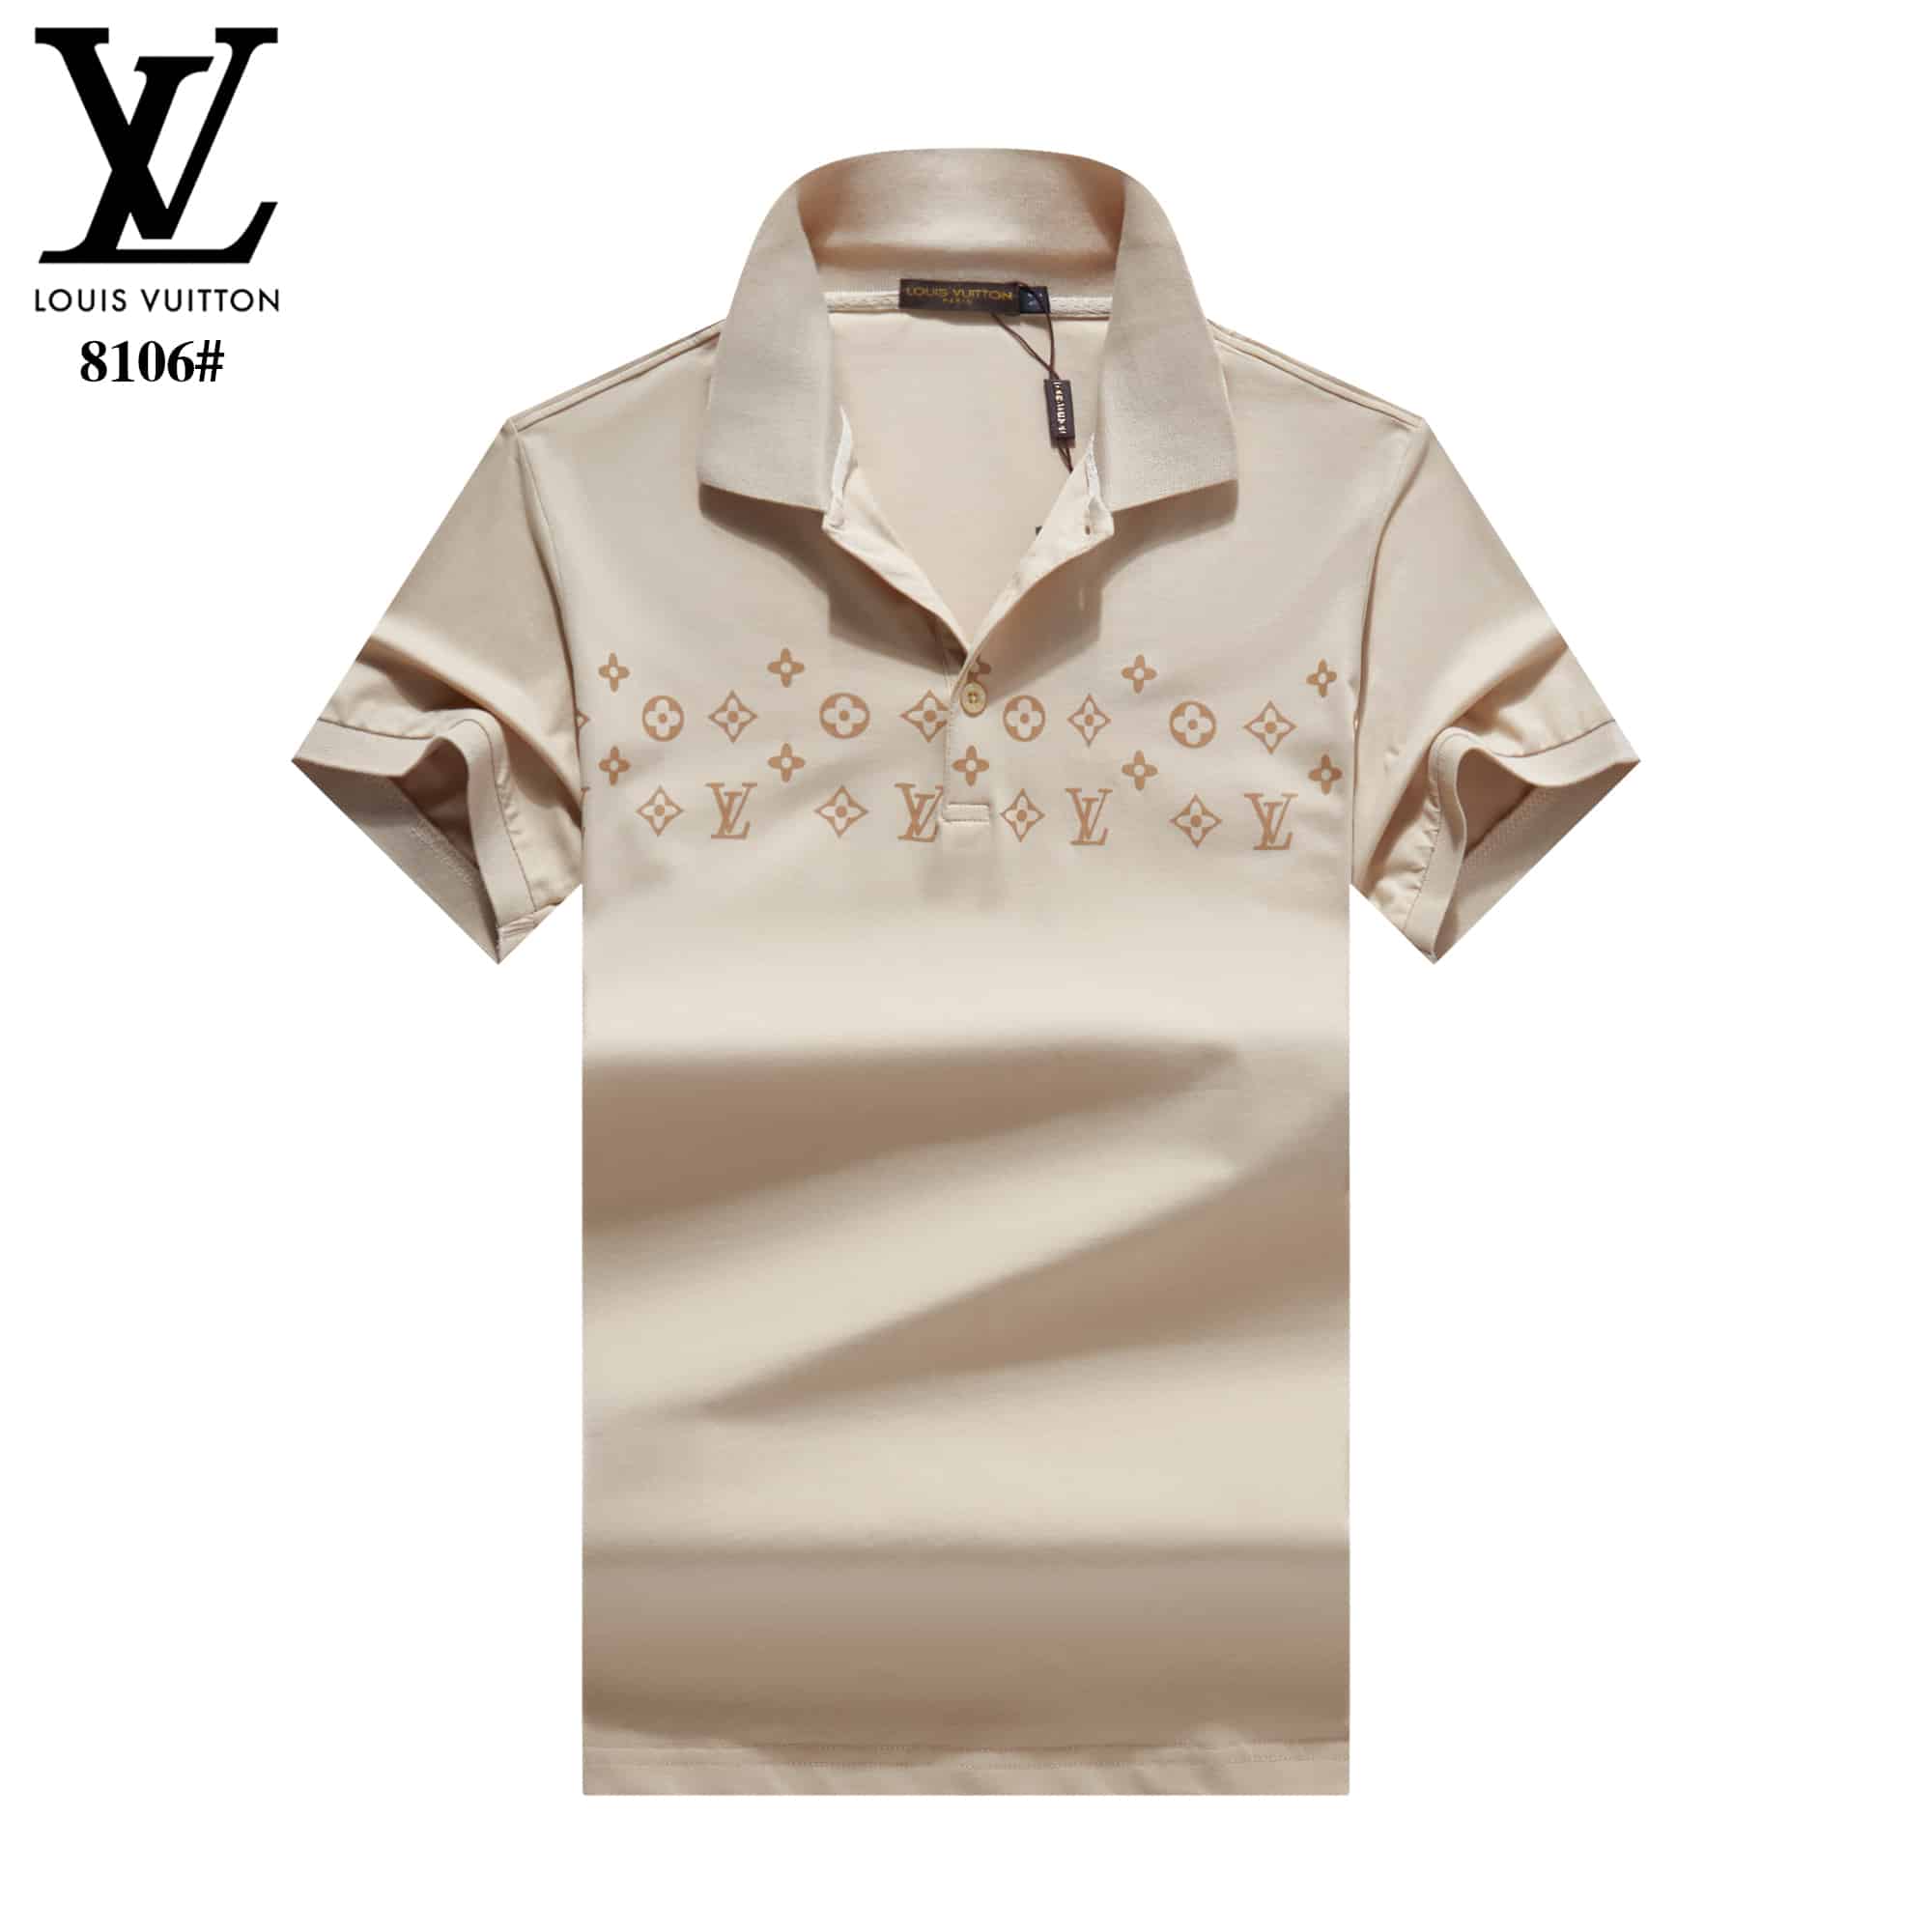 Camiseta Polo Louis Vuitton